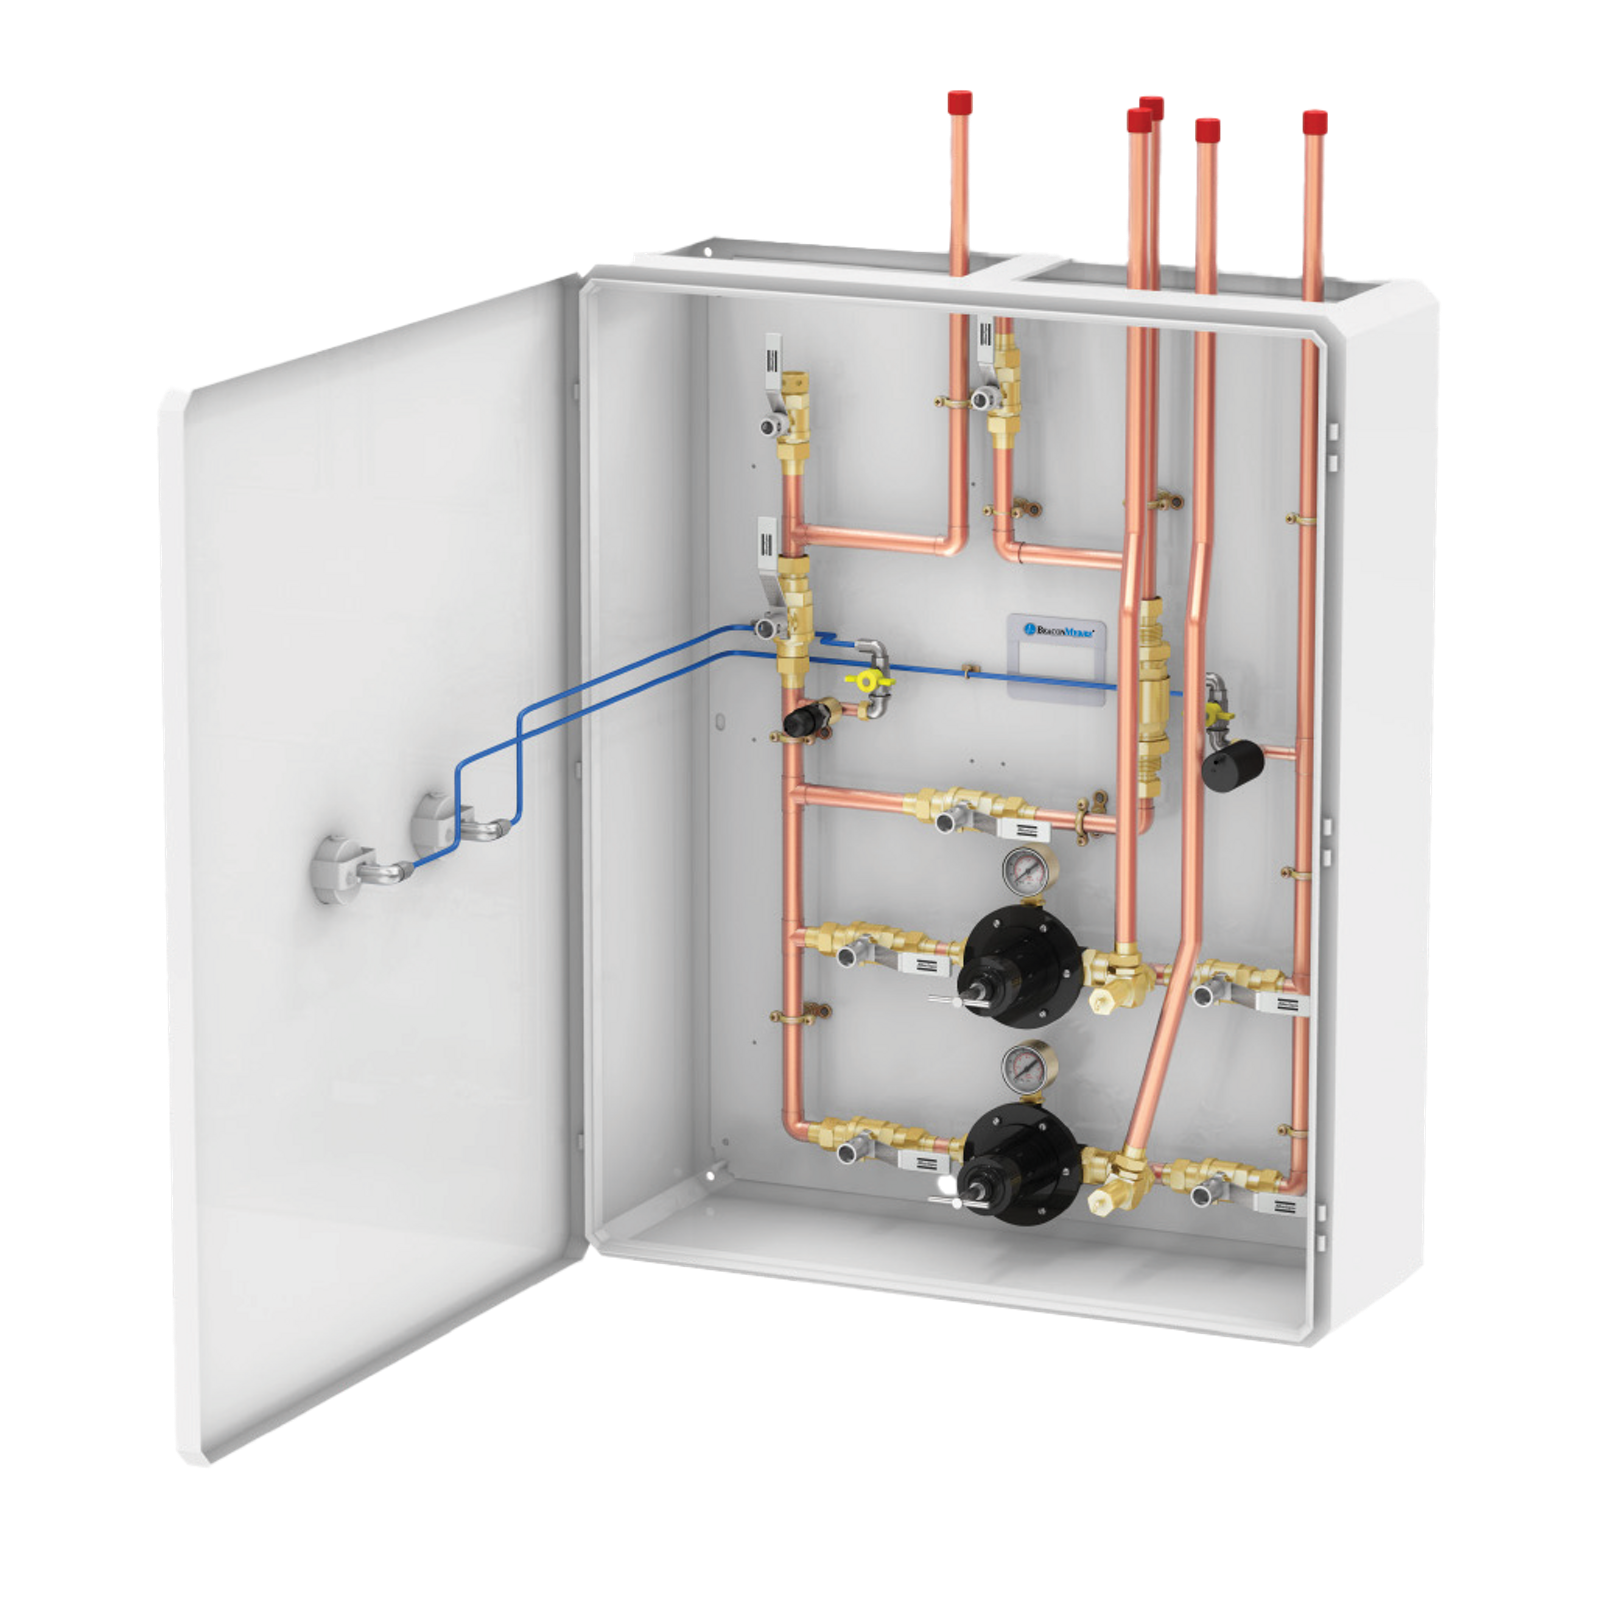 Vacuum Insulated Evaporator Control (VIE) Panel